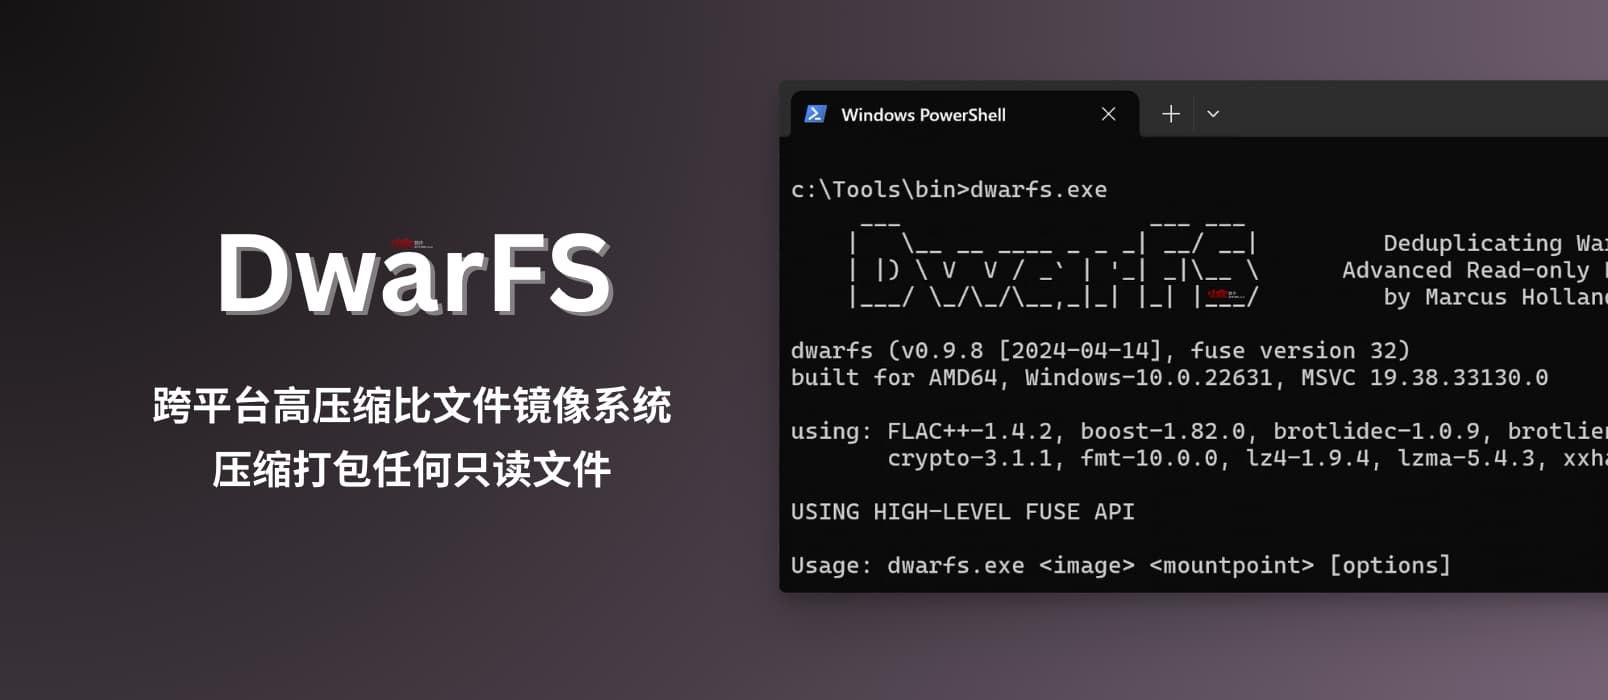 DwarFS - 跨平台、快速、高压缩比文件镜像系统：非常适合压缩打包海量小文件 16